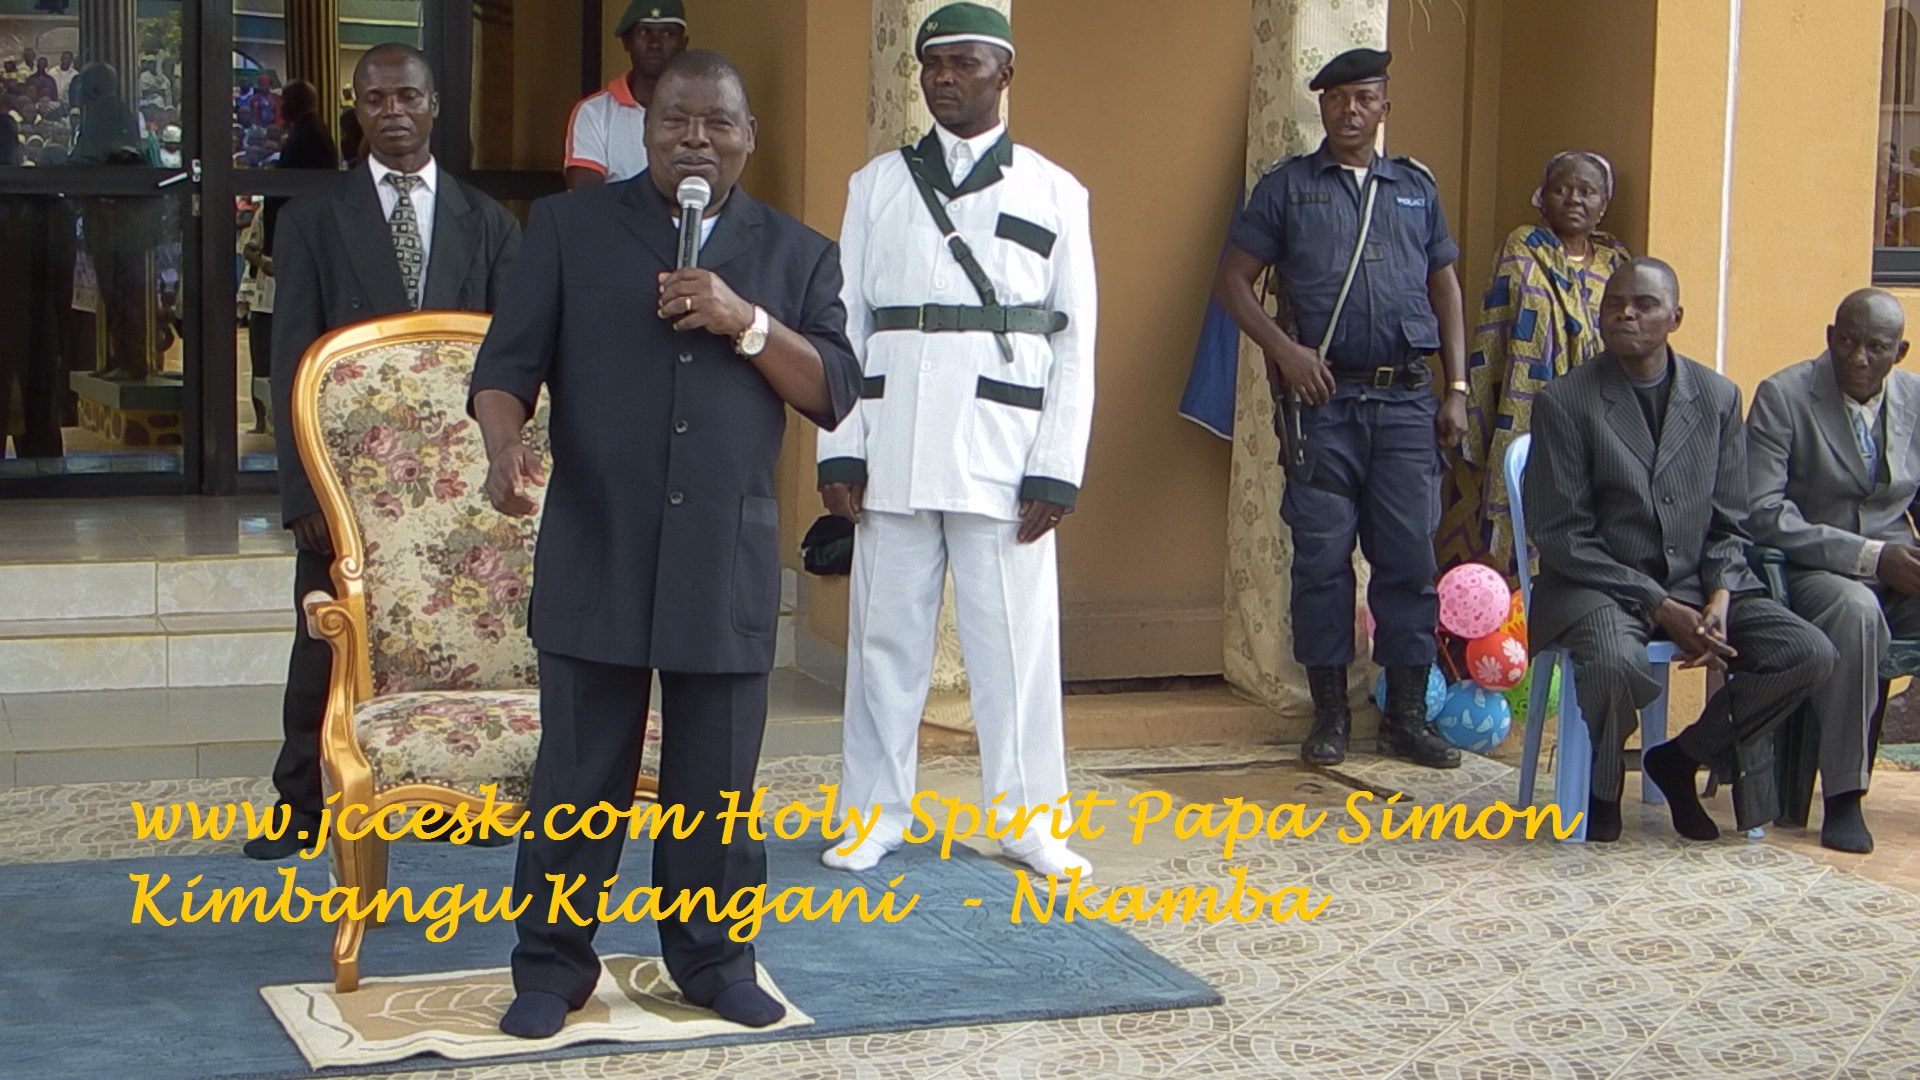 jccesk.com Holy Spirit Papa Simon Kimbangu Kiangani Nkamba New Jerusalem